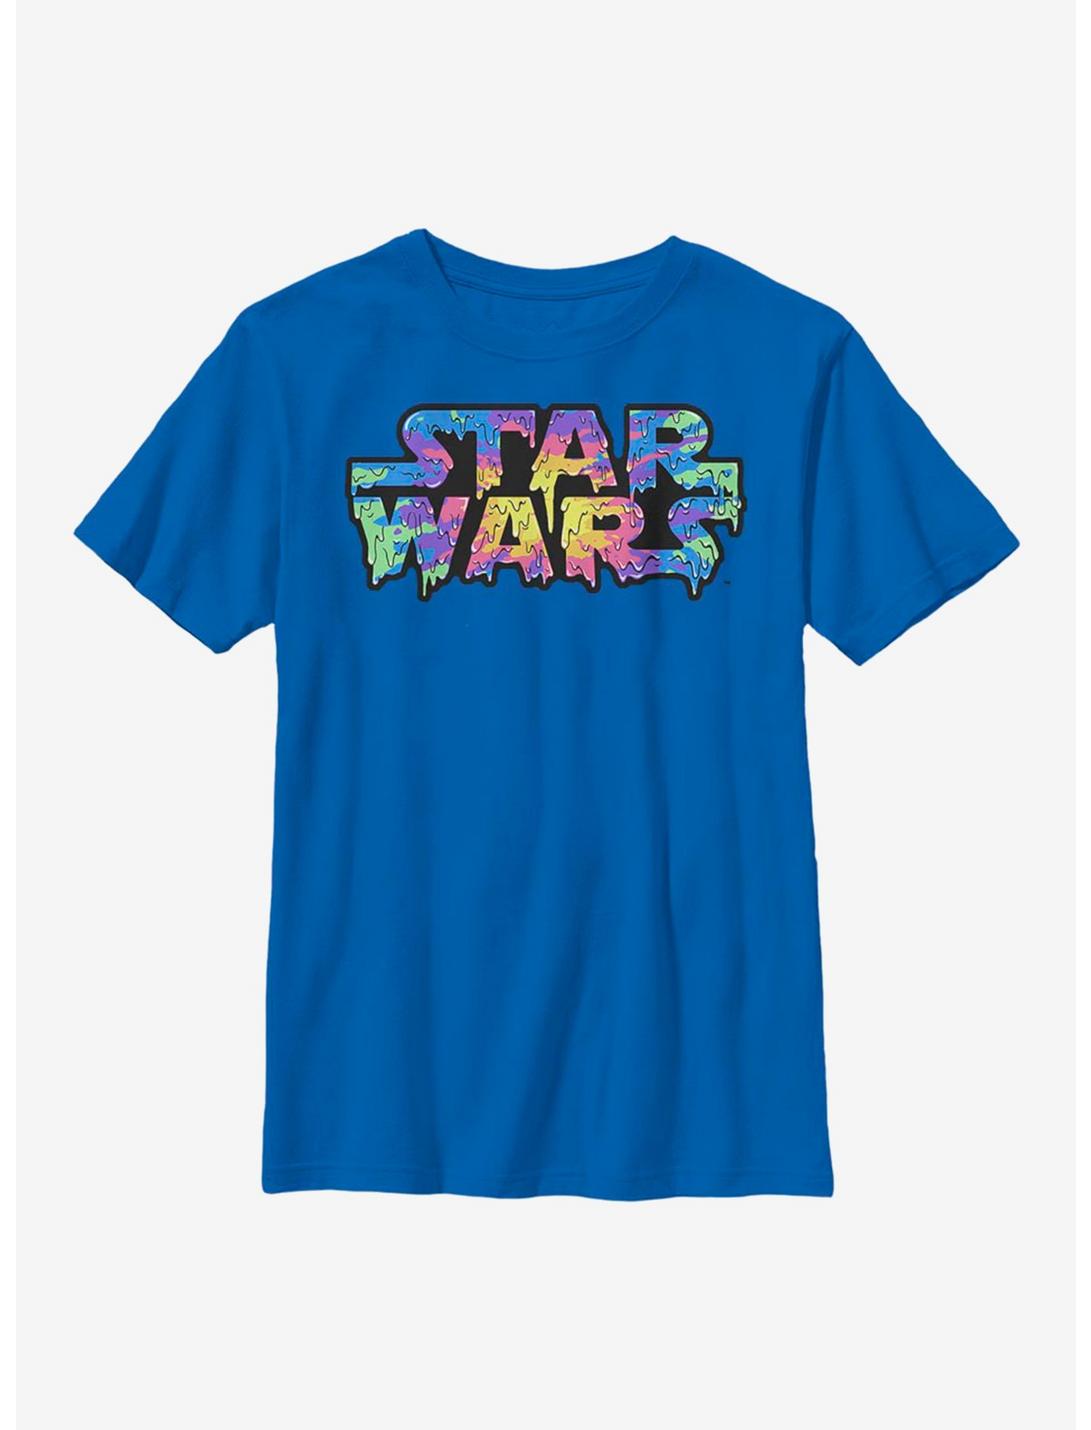 Star Wars Rainbow Drip Logo Youth T-Shirt, ROYAL, hi-res